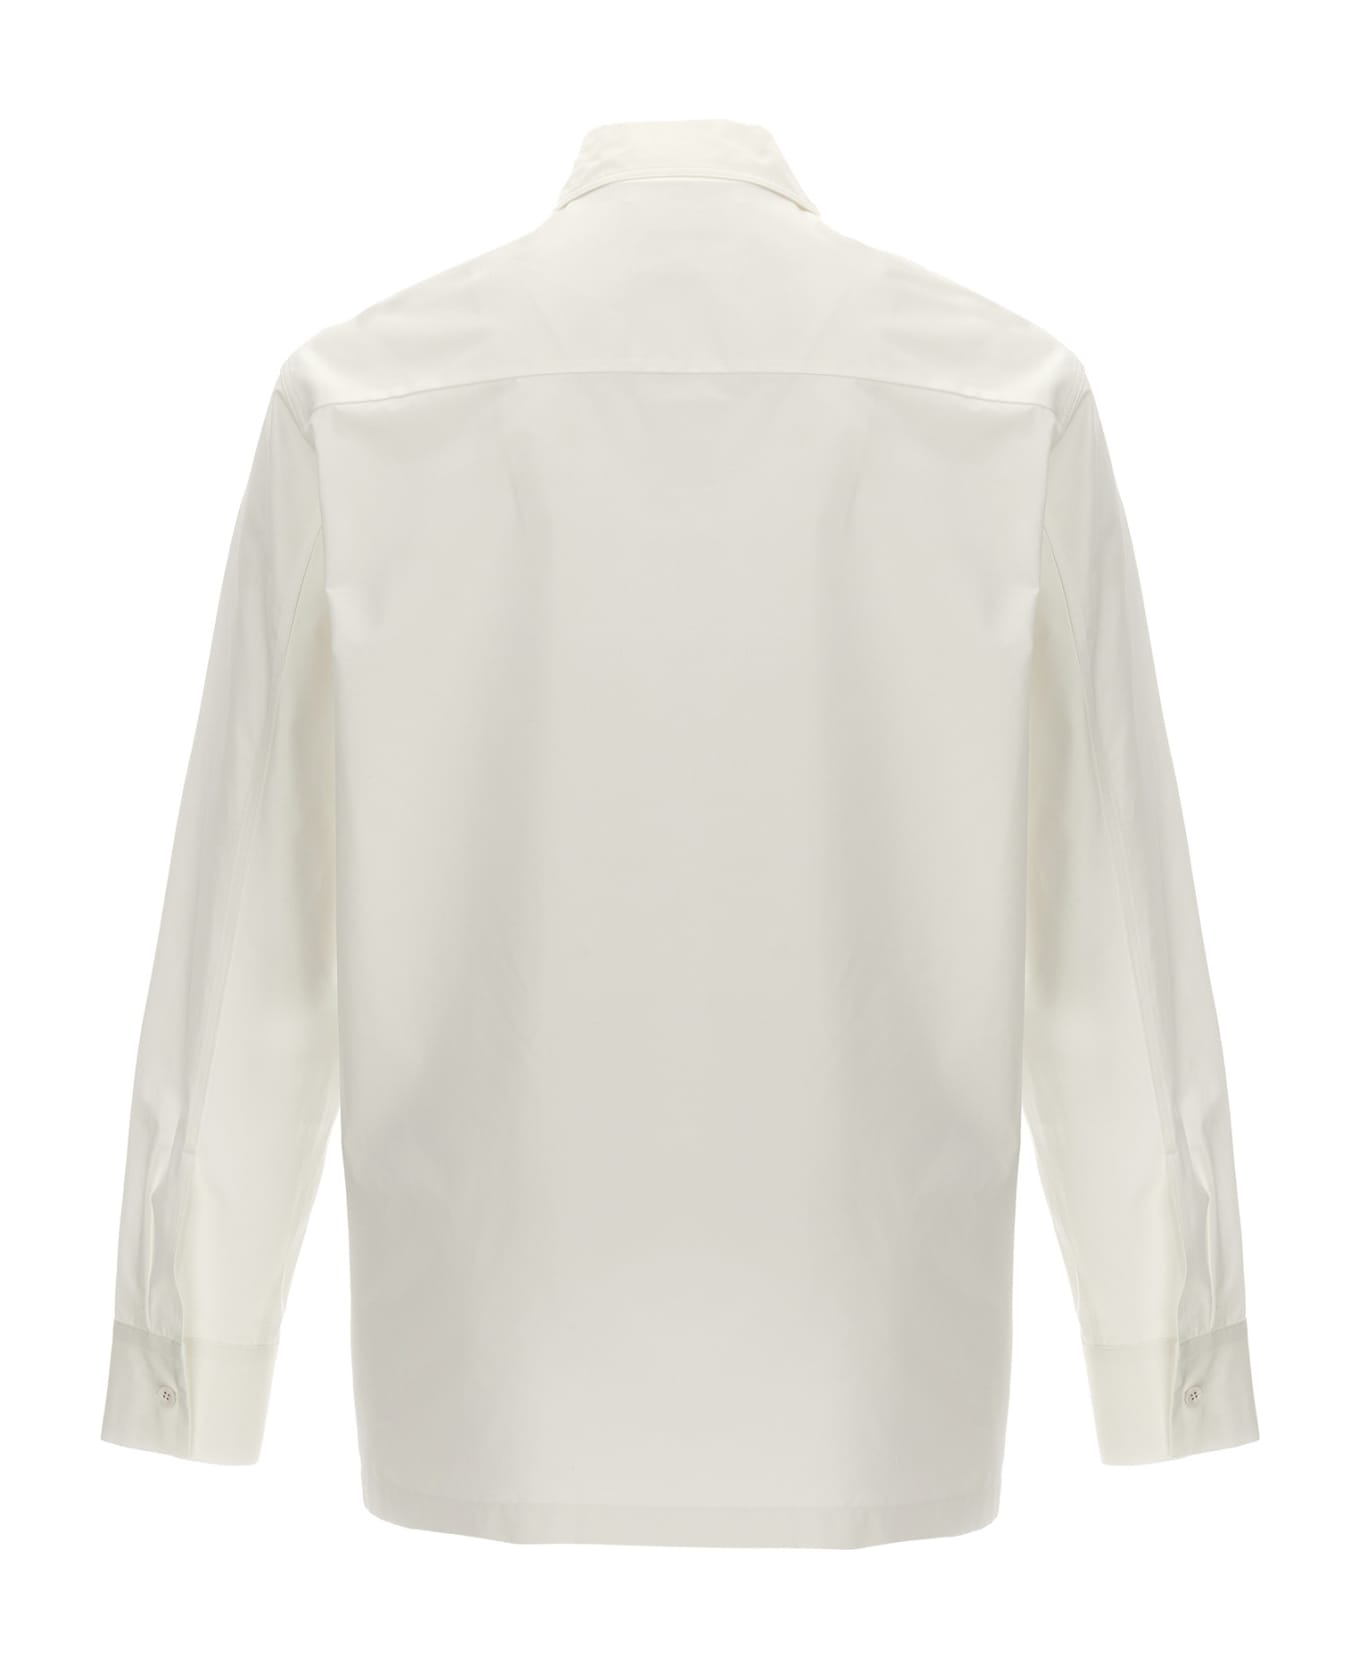 Jil Sander Pocket Shirt - White